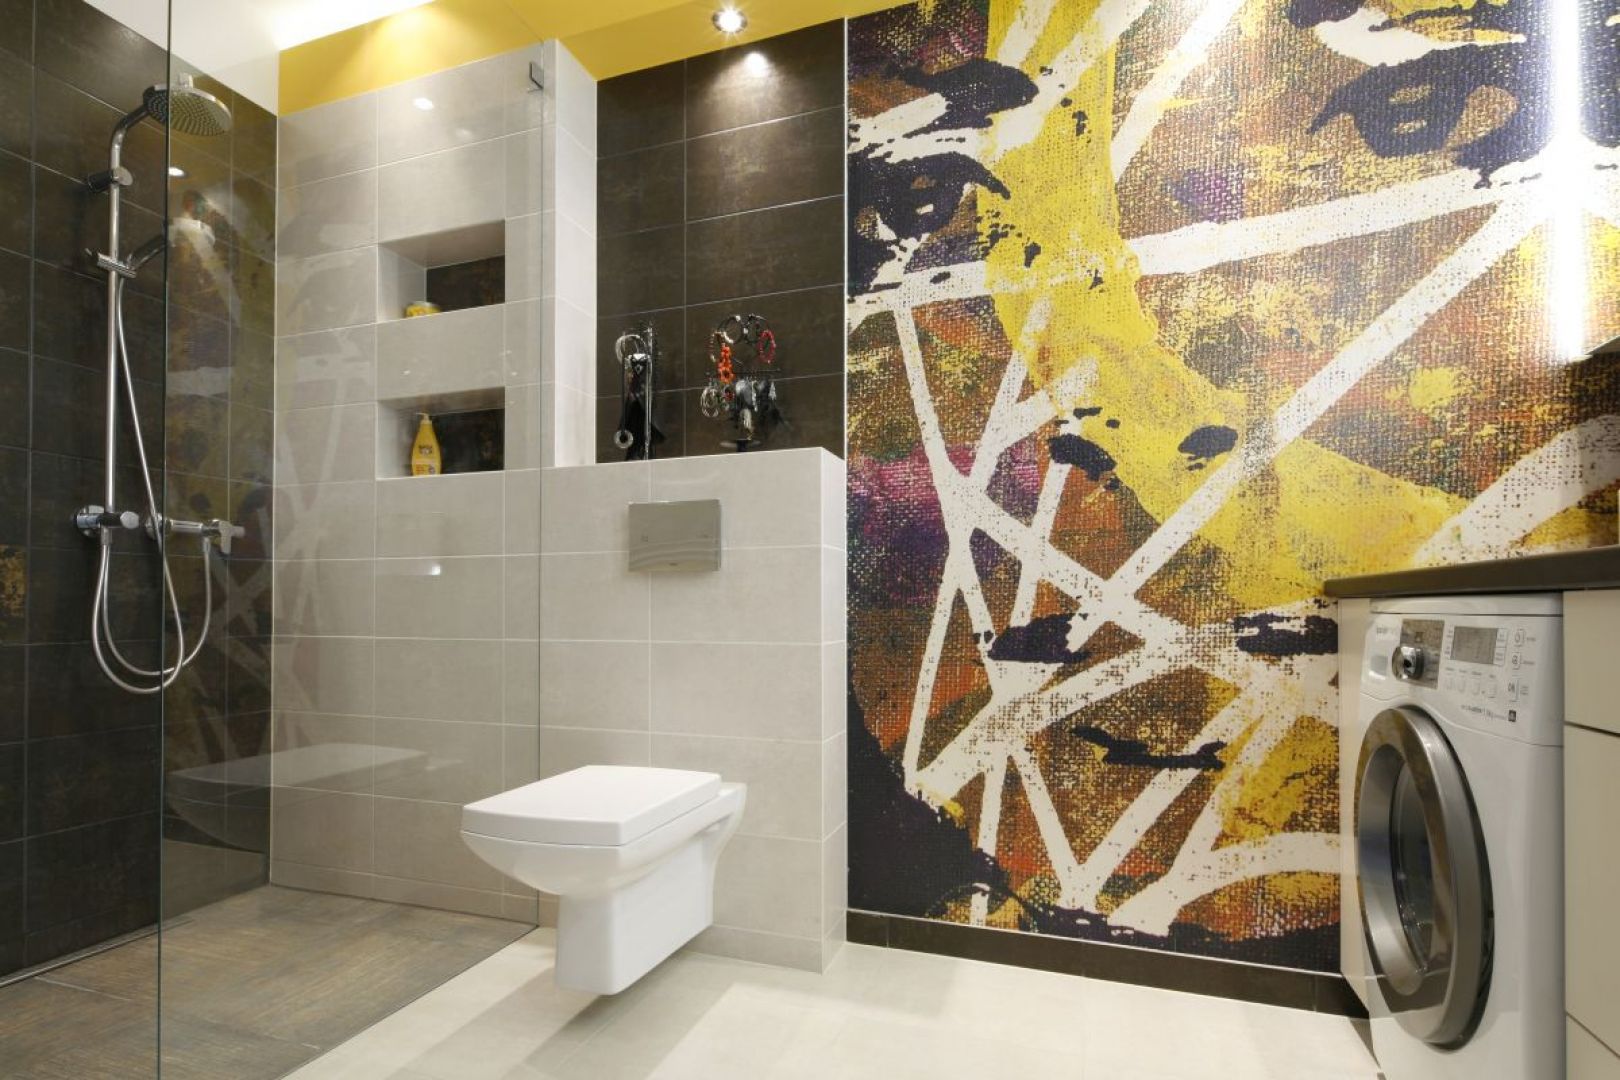 Nowoczesna, kolorowa grafika stanowi mocny dekoracyjny akcent w tej łazience. Projekt: Monika Olejnik. Fot. Bartosz Jarosz